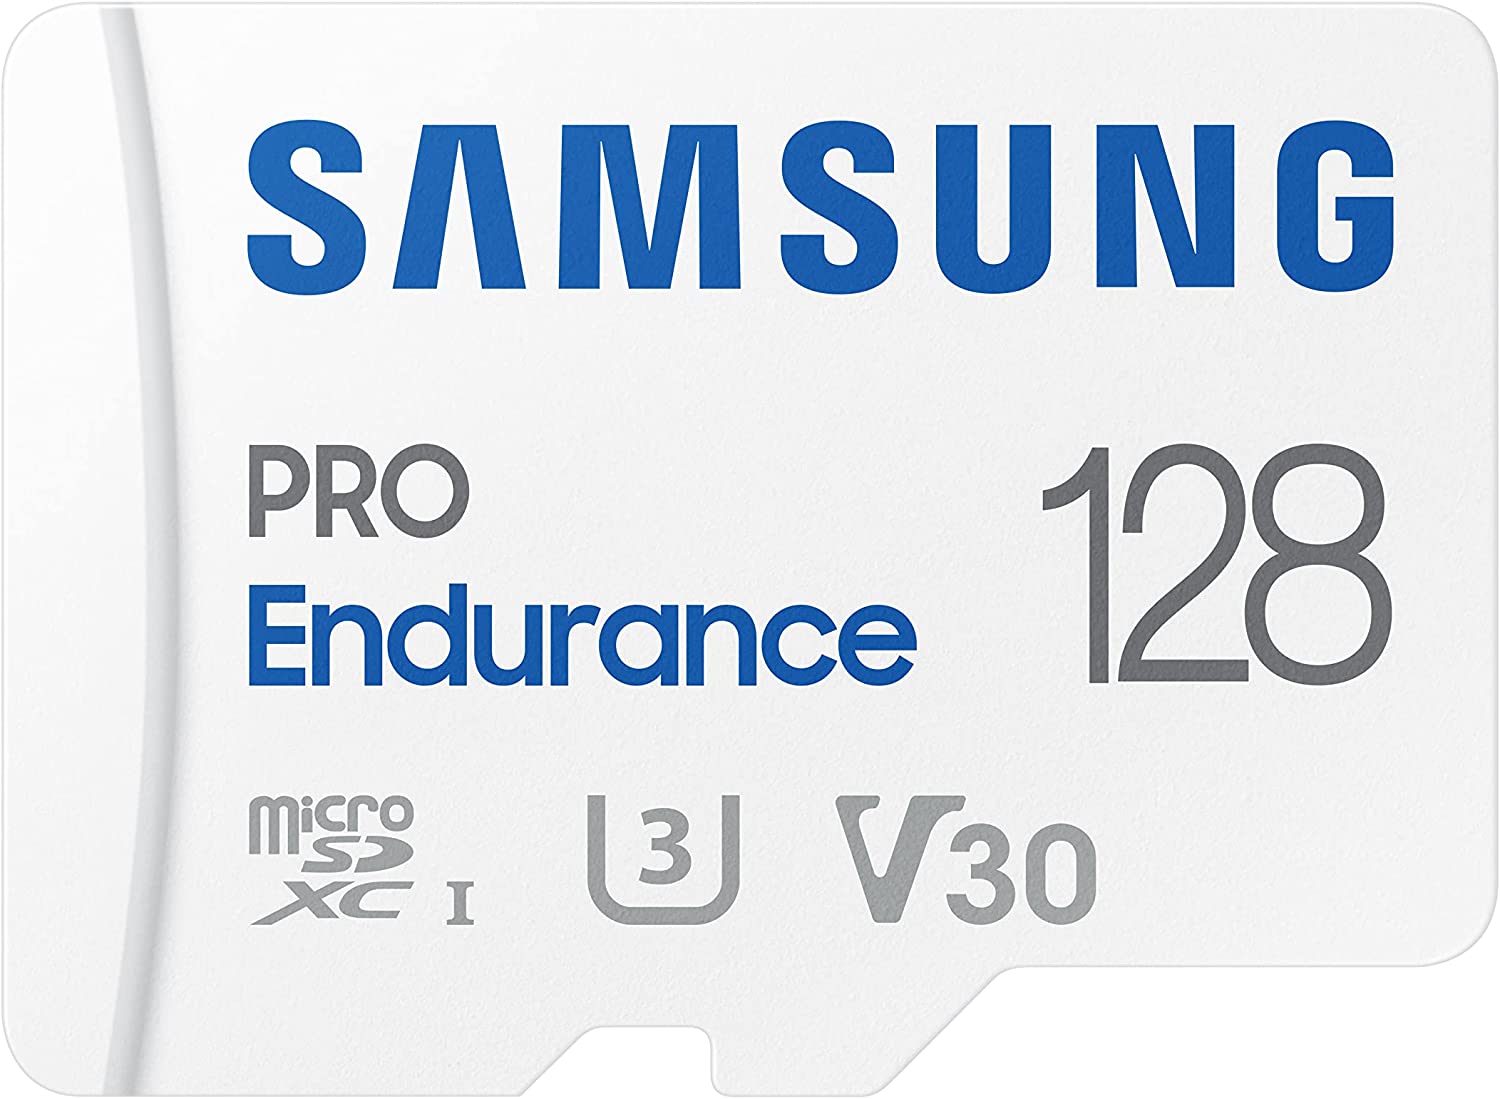 SAMSUNG Pro Endurance Tarjeta de Memoria MicroSDXC de 128 GB con Adaptador para cámara de salpicadero, cámara Corporal y cámara de Seguridad – Clase 10, U3, V30 (MB-MJ128KA/AM)